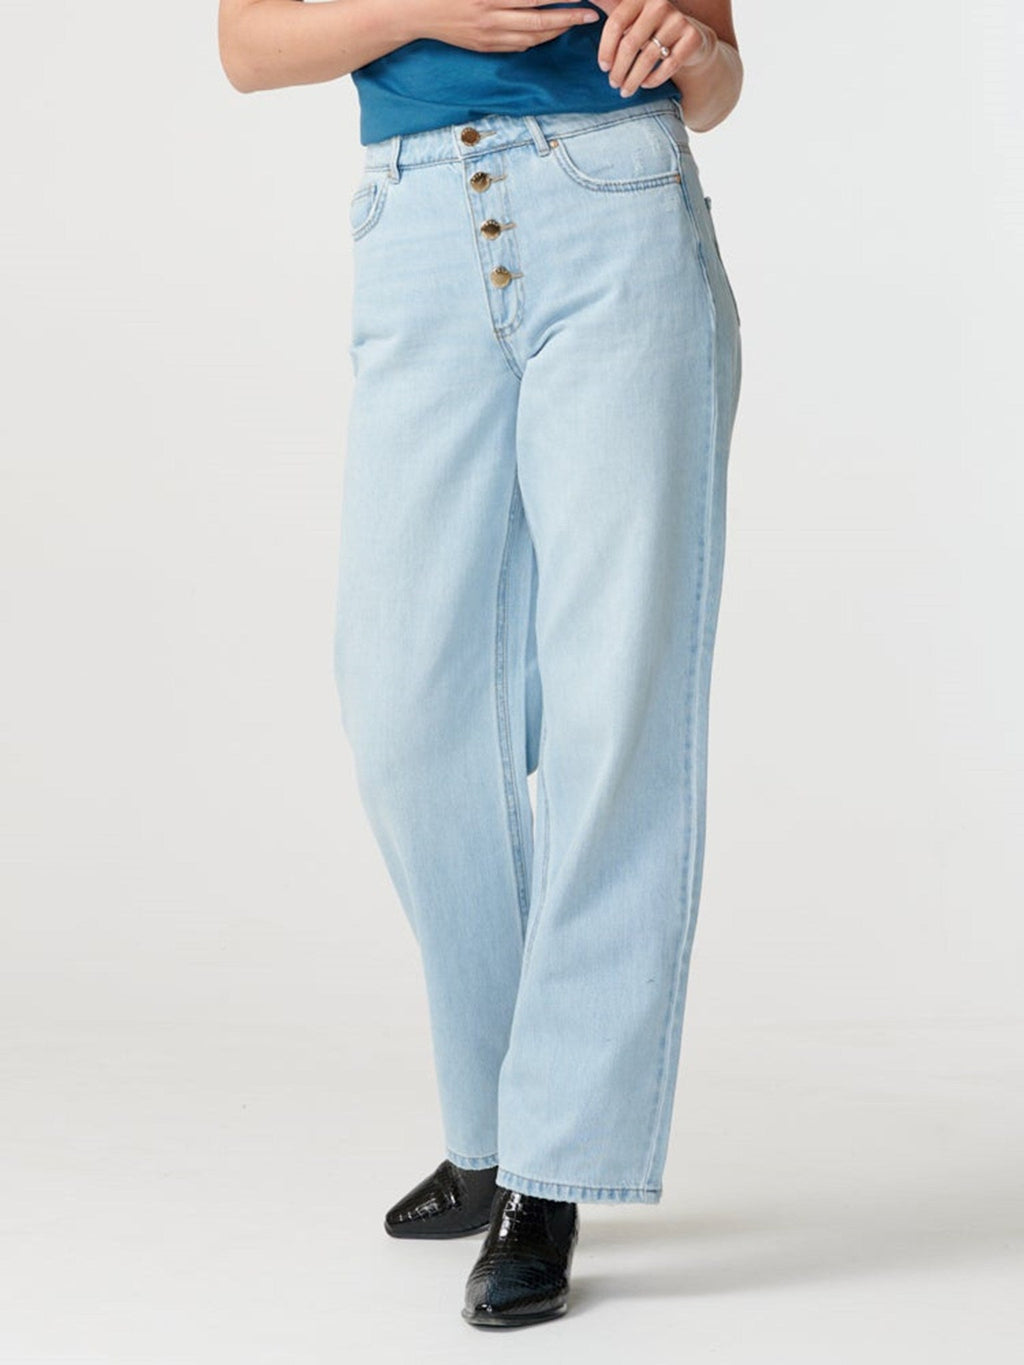 Juicy jeans (wide been) - licht denimblauw